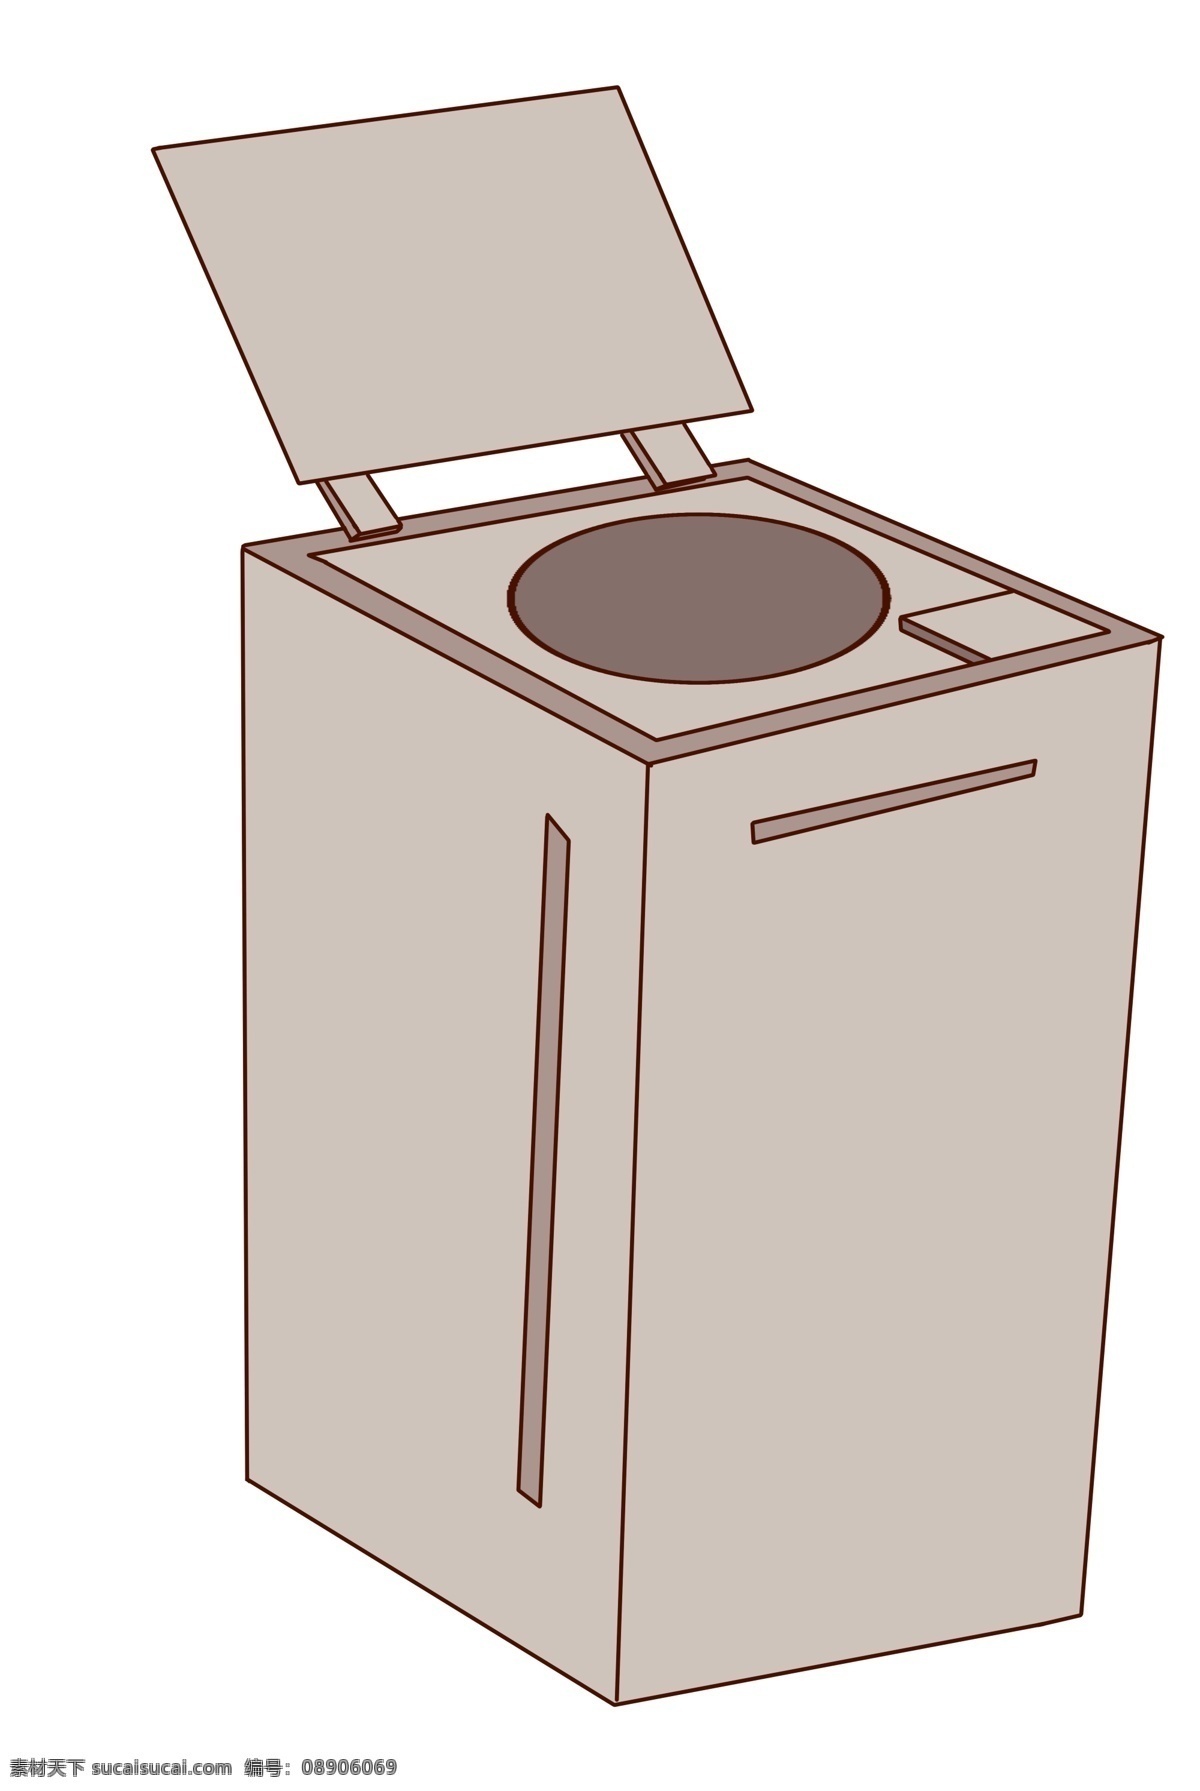 灰色 全自动 洗衣机 灰色洗衣机 全自动洗衣机 洗衣机插图 智能洗衣机 家用电器 洗衣服 机器